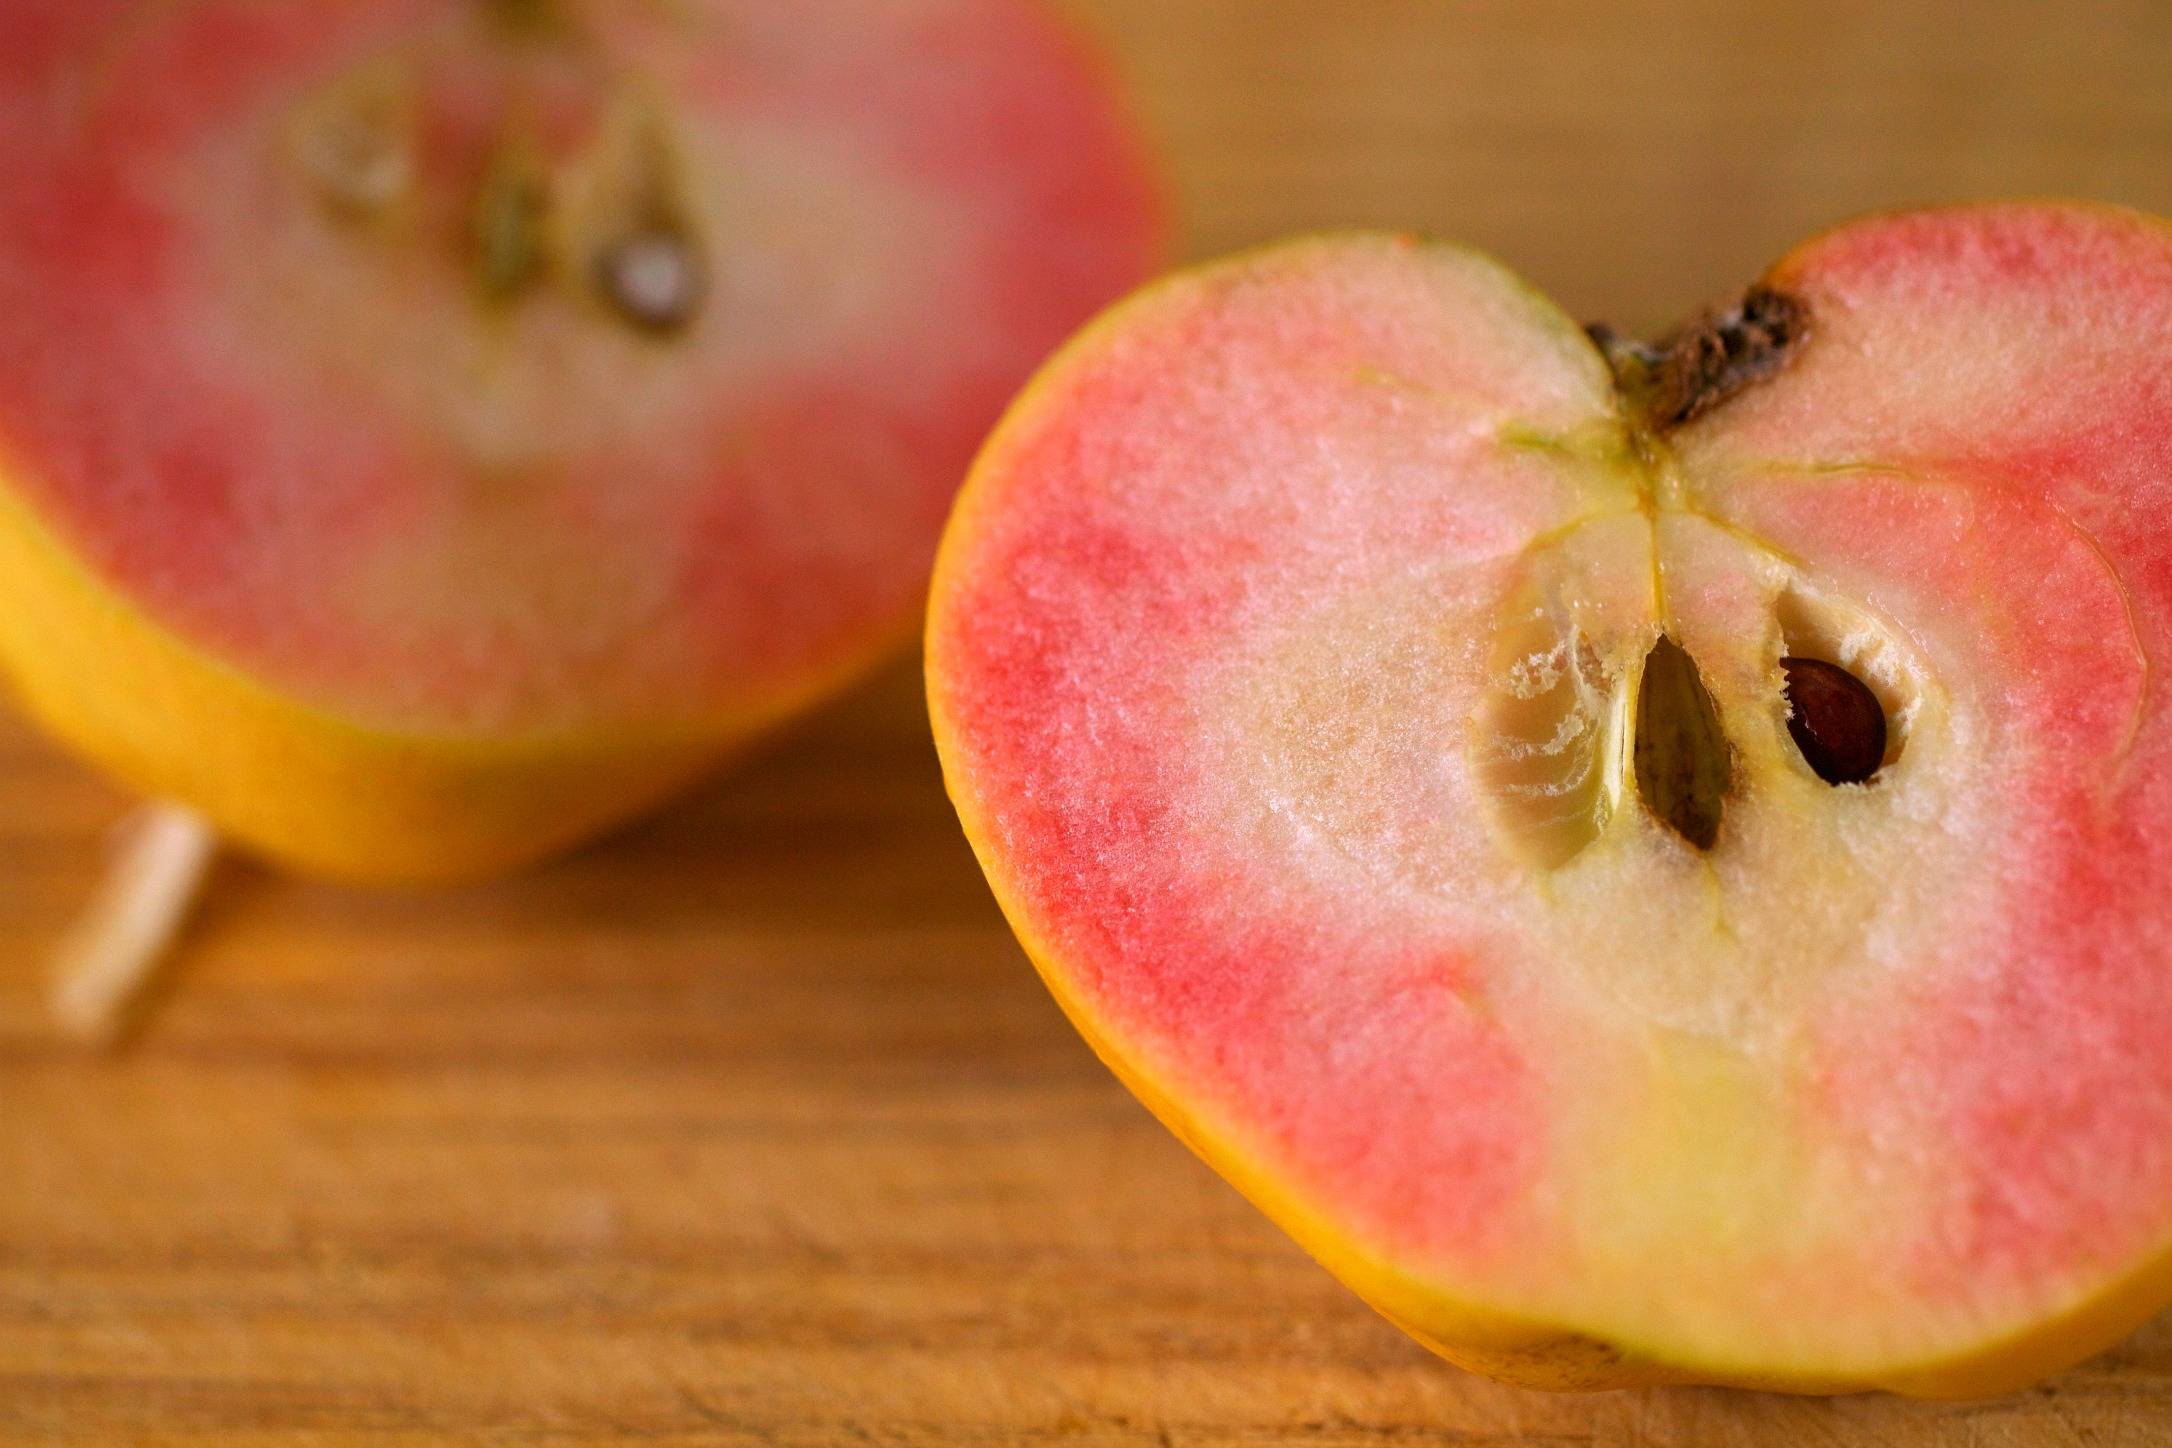 Описание сорта яблони розовый жемчуг: фото яблок, важные характеристики, урожайность с дерева